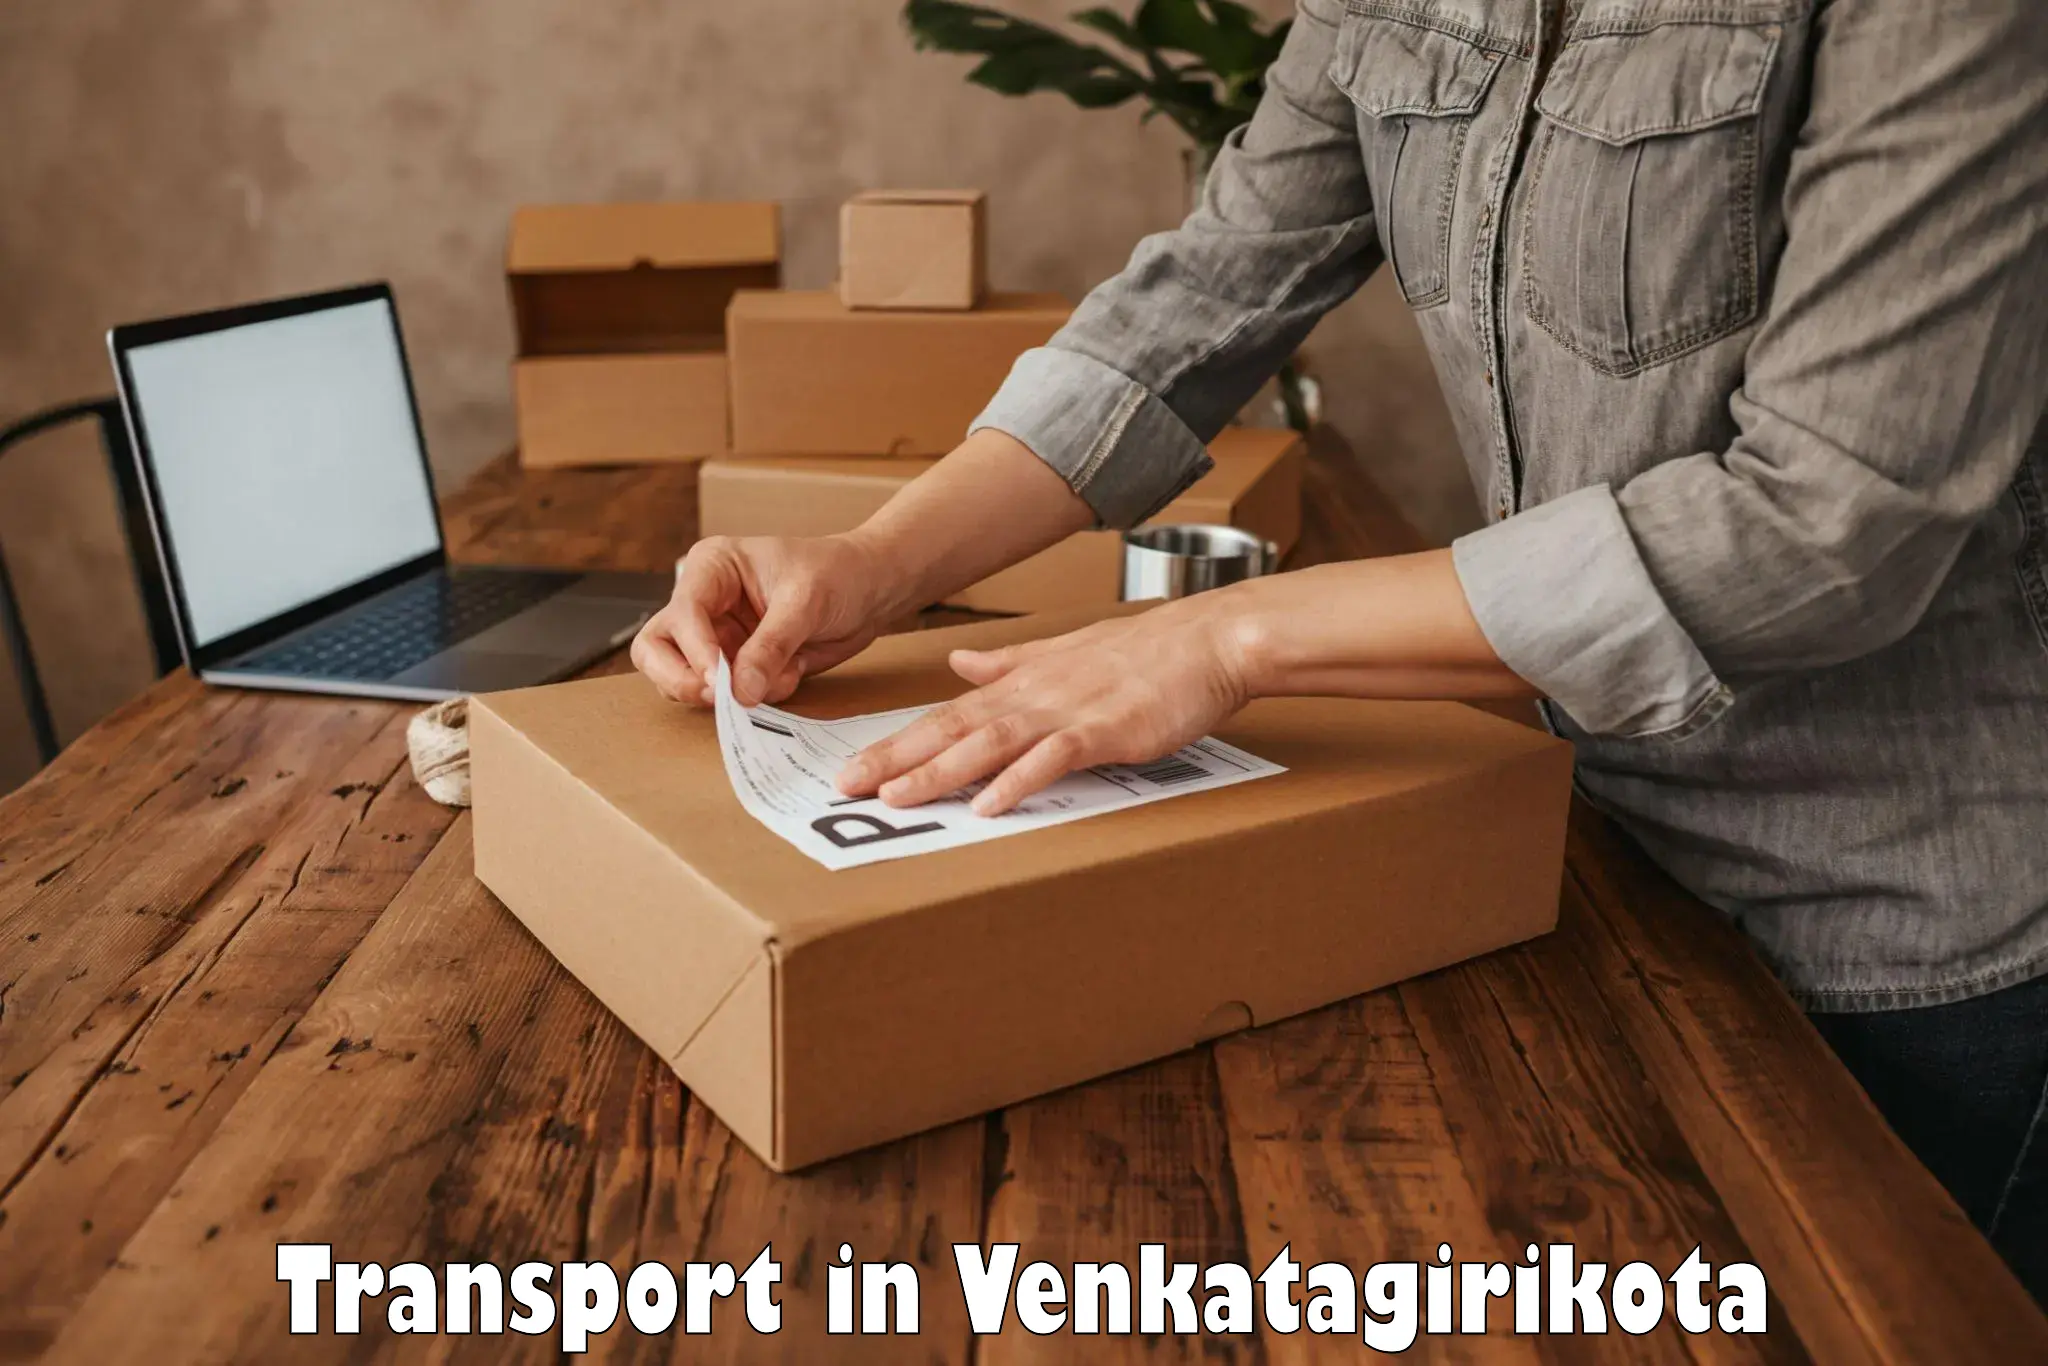 Goods delivery service in Venkatagirikota